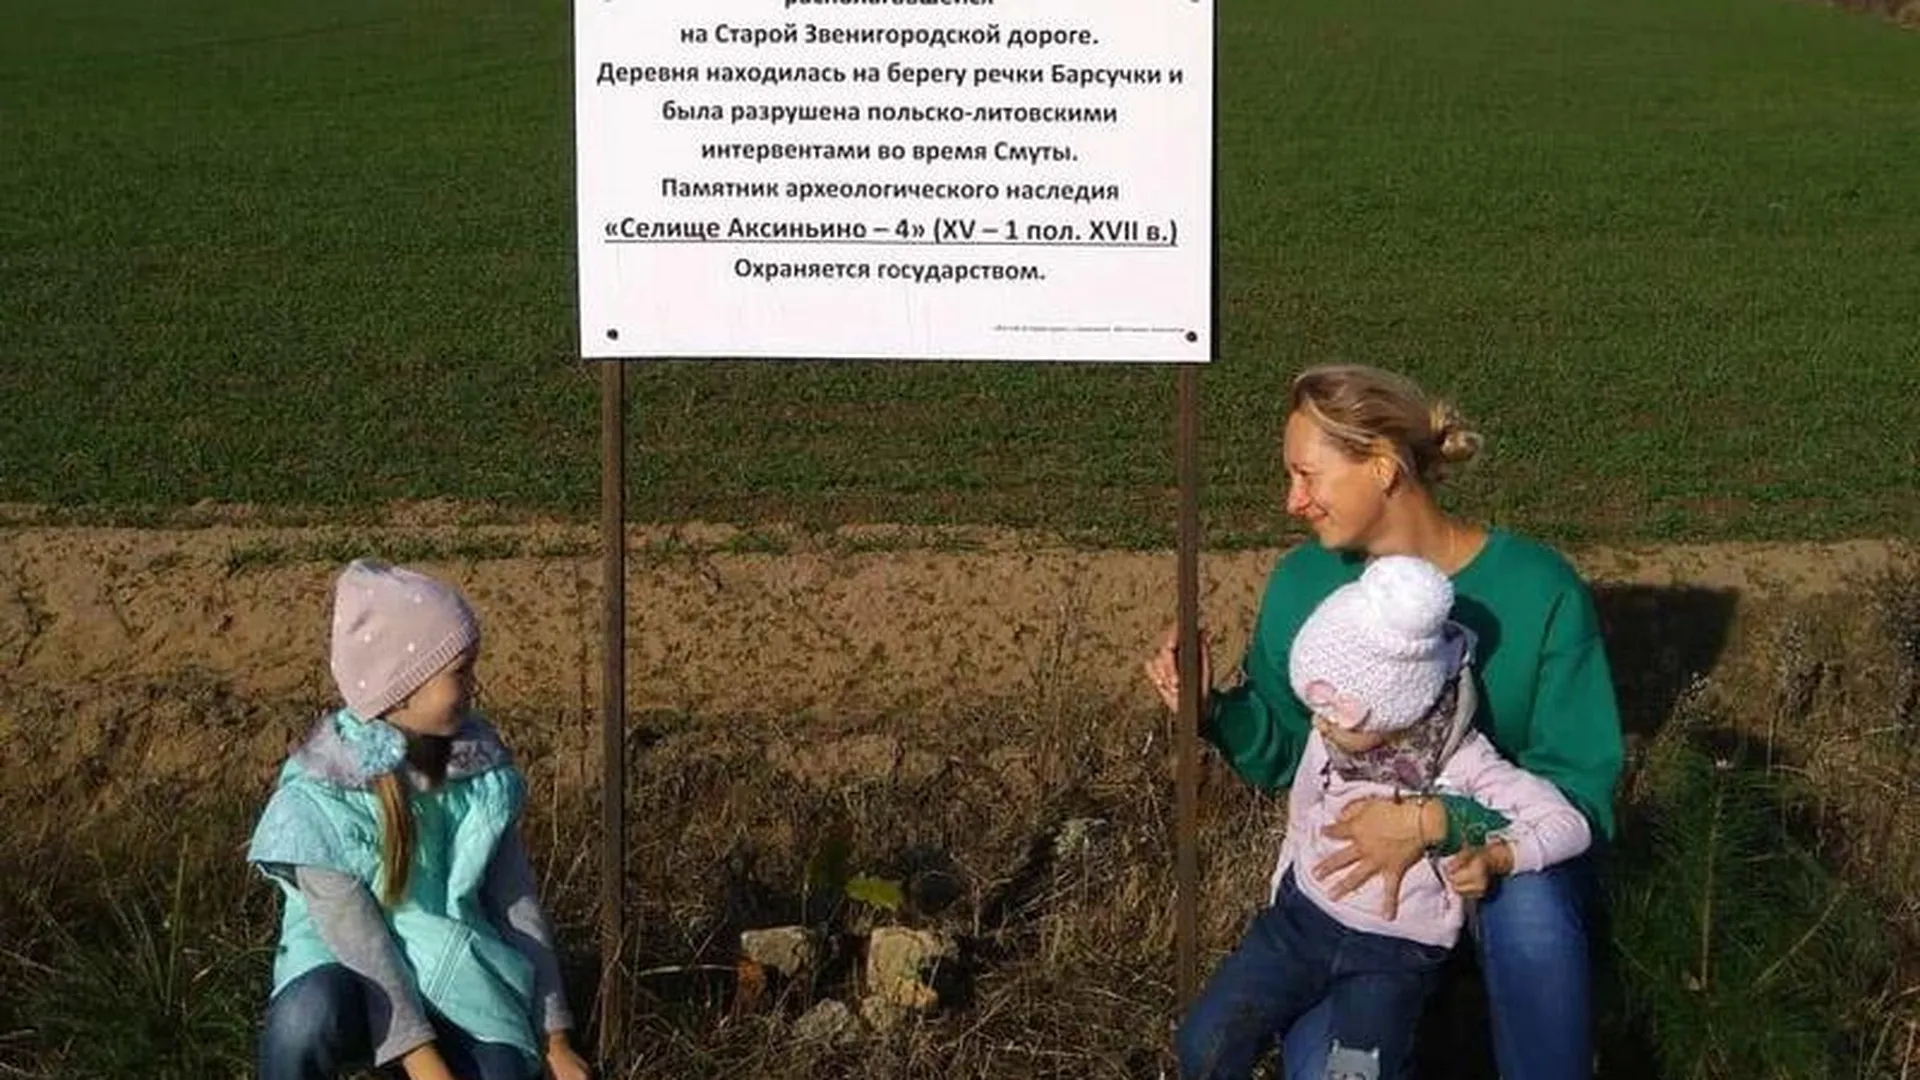 Анастасия Шестакова: «Аксиньино – село на старой Звенигородской дороге»